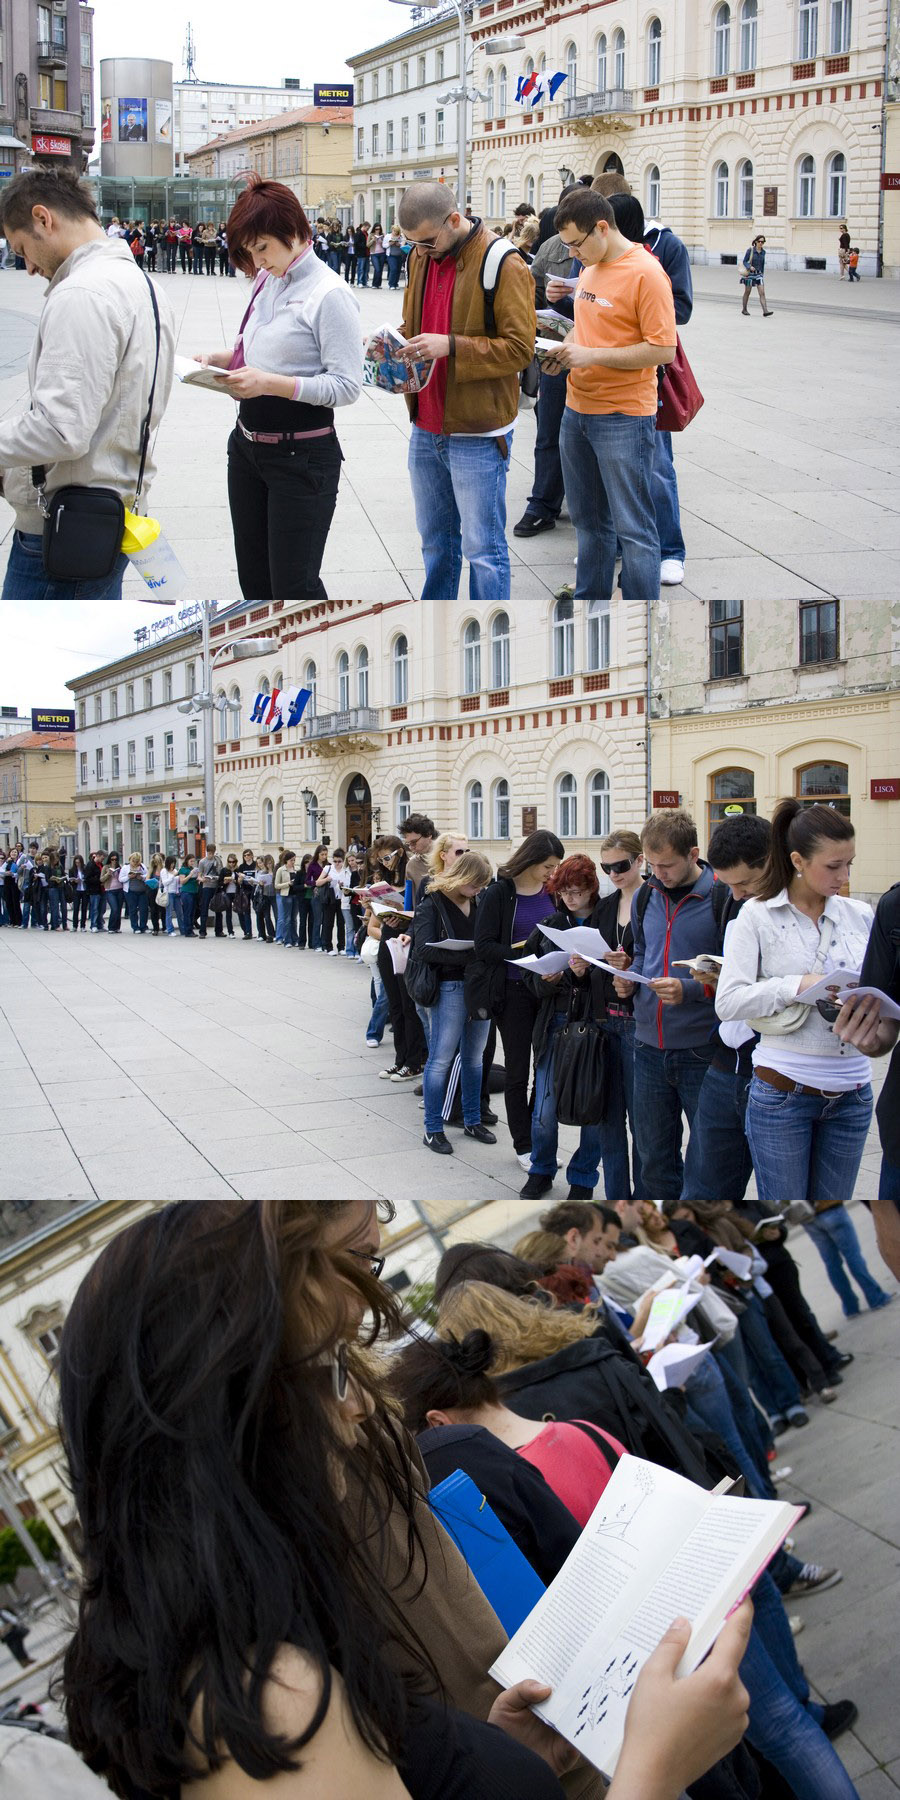 '5 do 12'

Foto: Daniel Antunovi

[url=http://www.osijek031.com/osijek.php?najava_id=19162]Studentski prosvjed u Osijeku![/url]

Kljune rijei: studentski prosvjed trg